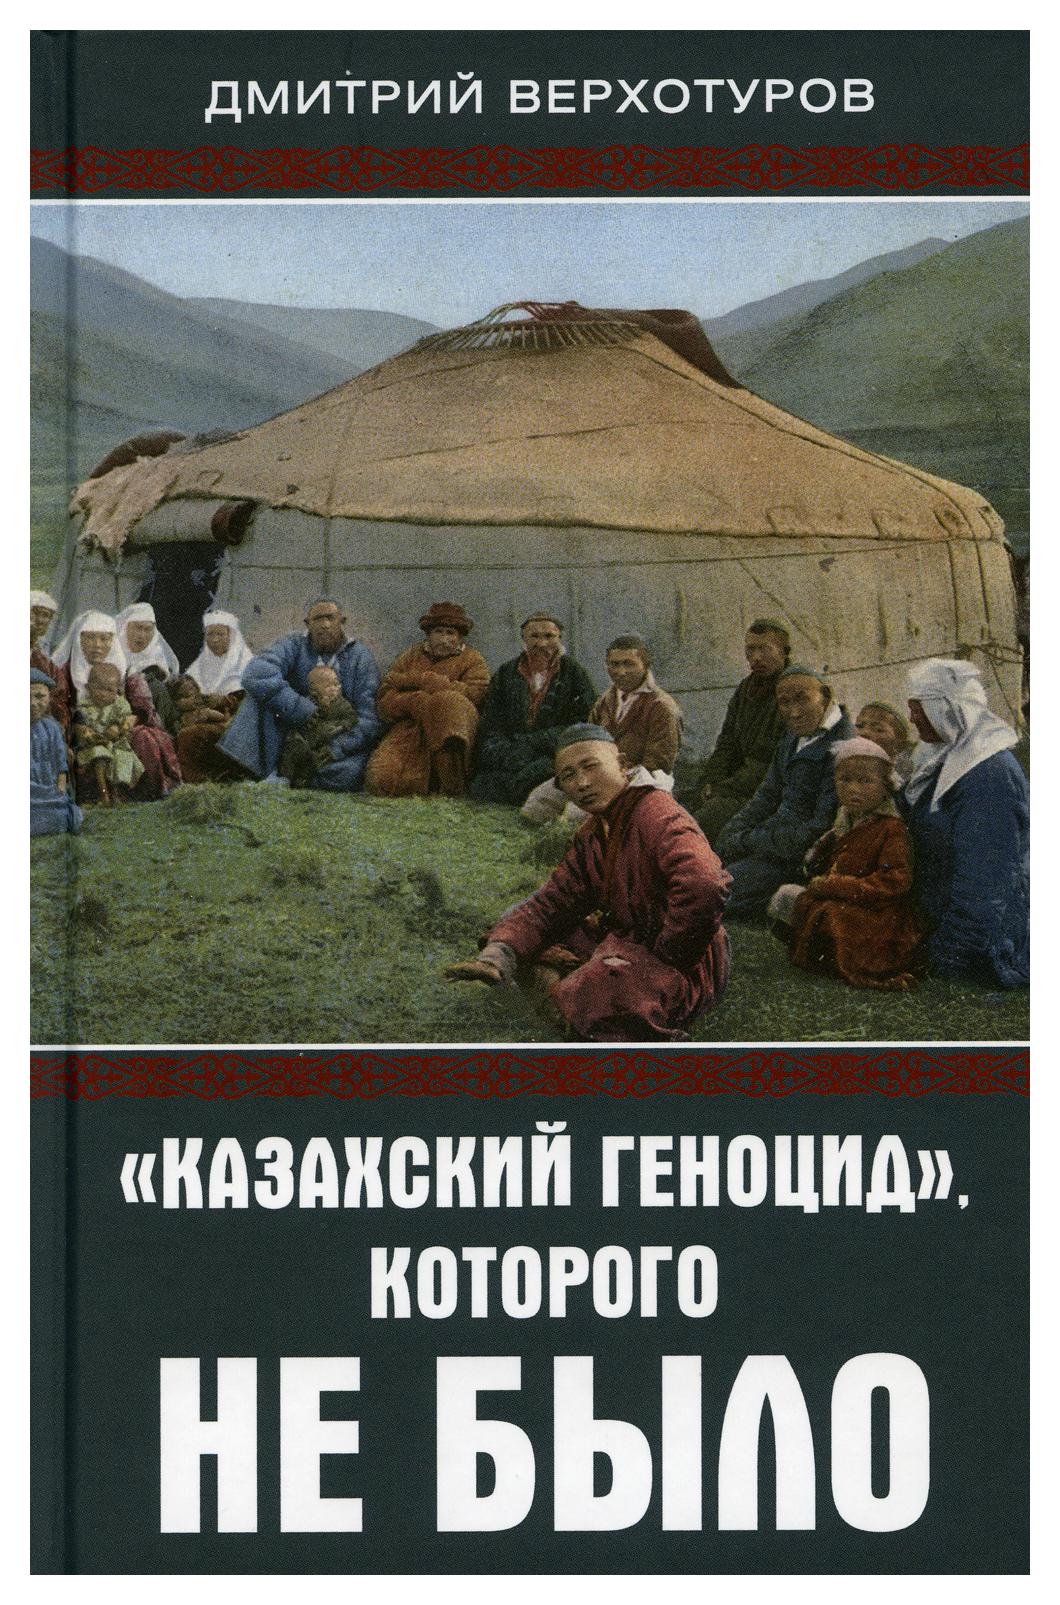 фото Книга "казахский геноцид", которого не было родина издательство ооо